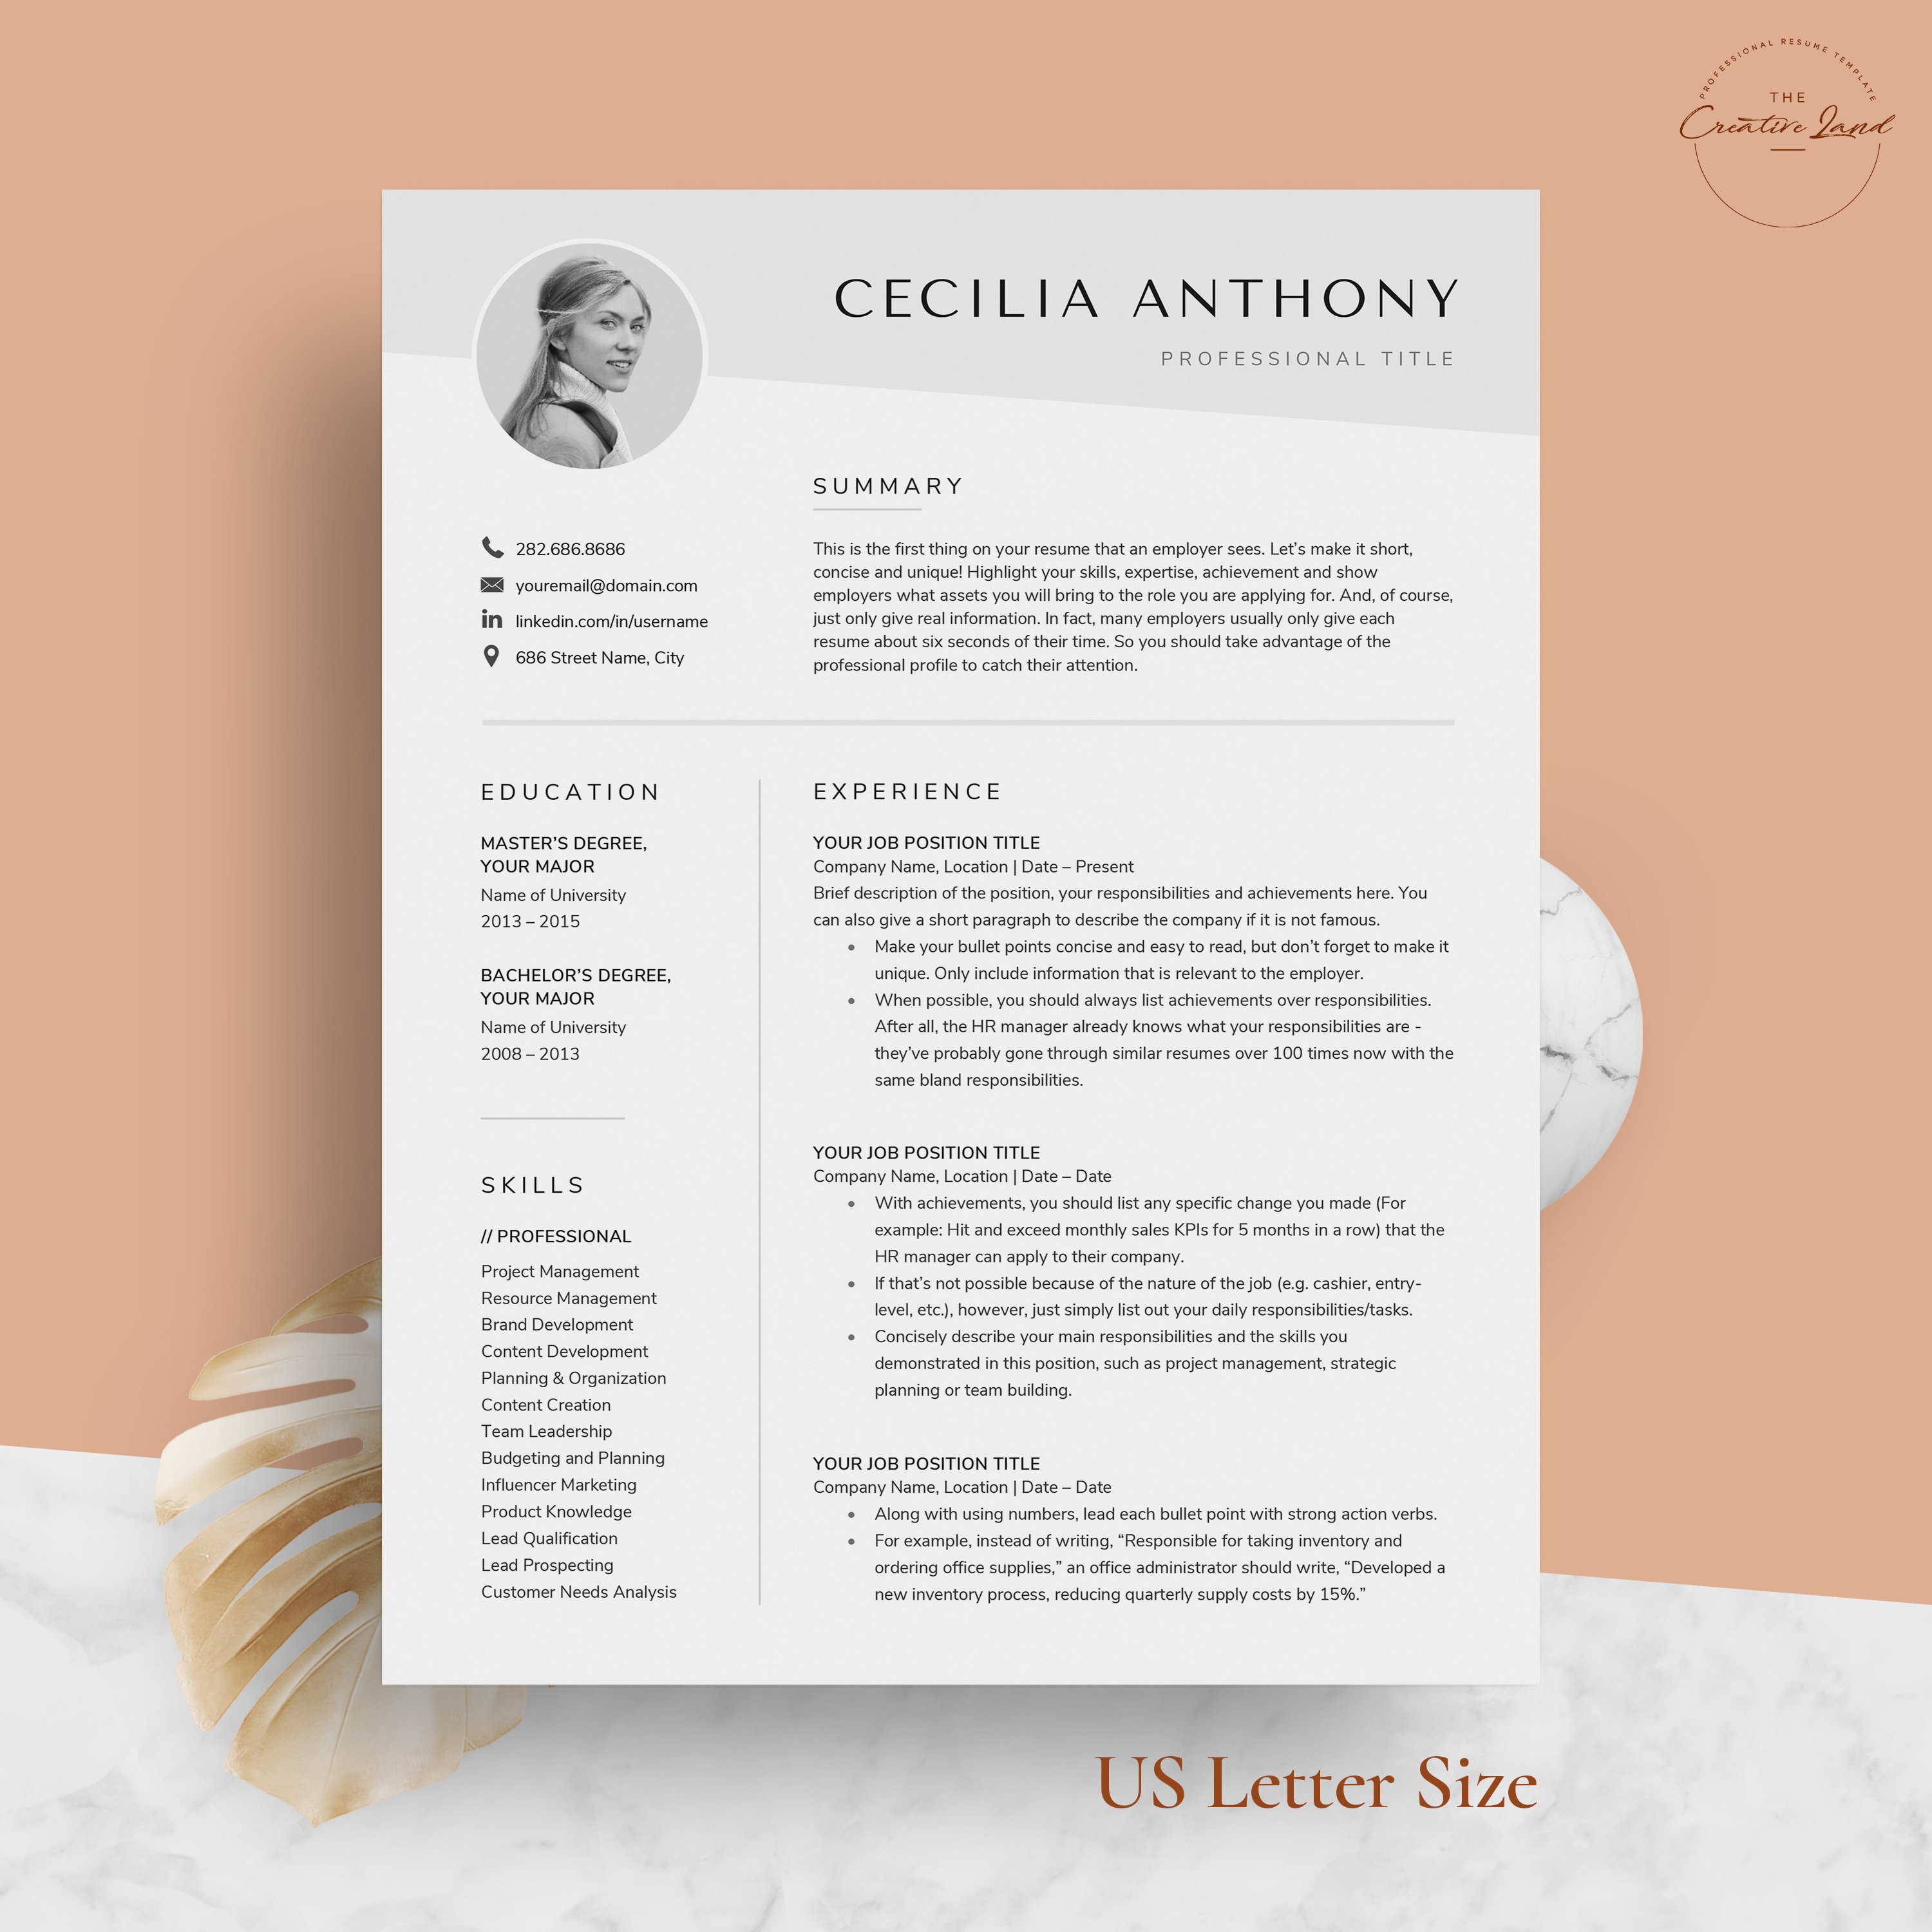 Resume/CV - The Cecilia preview image.